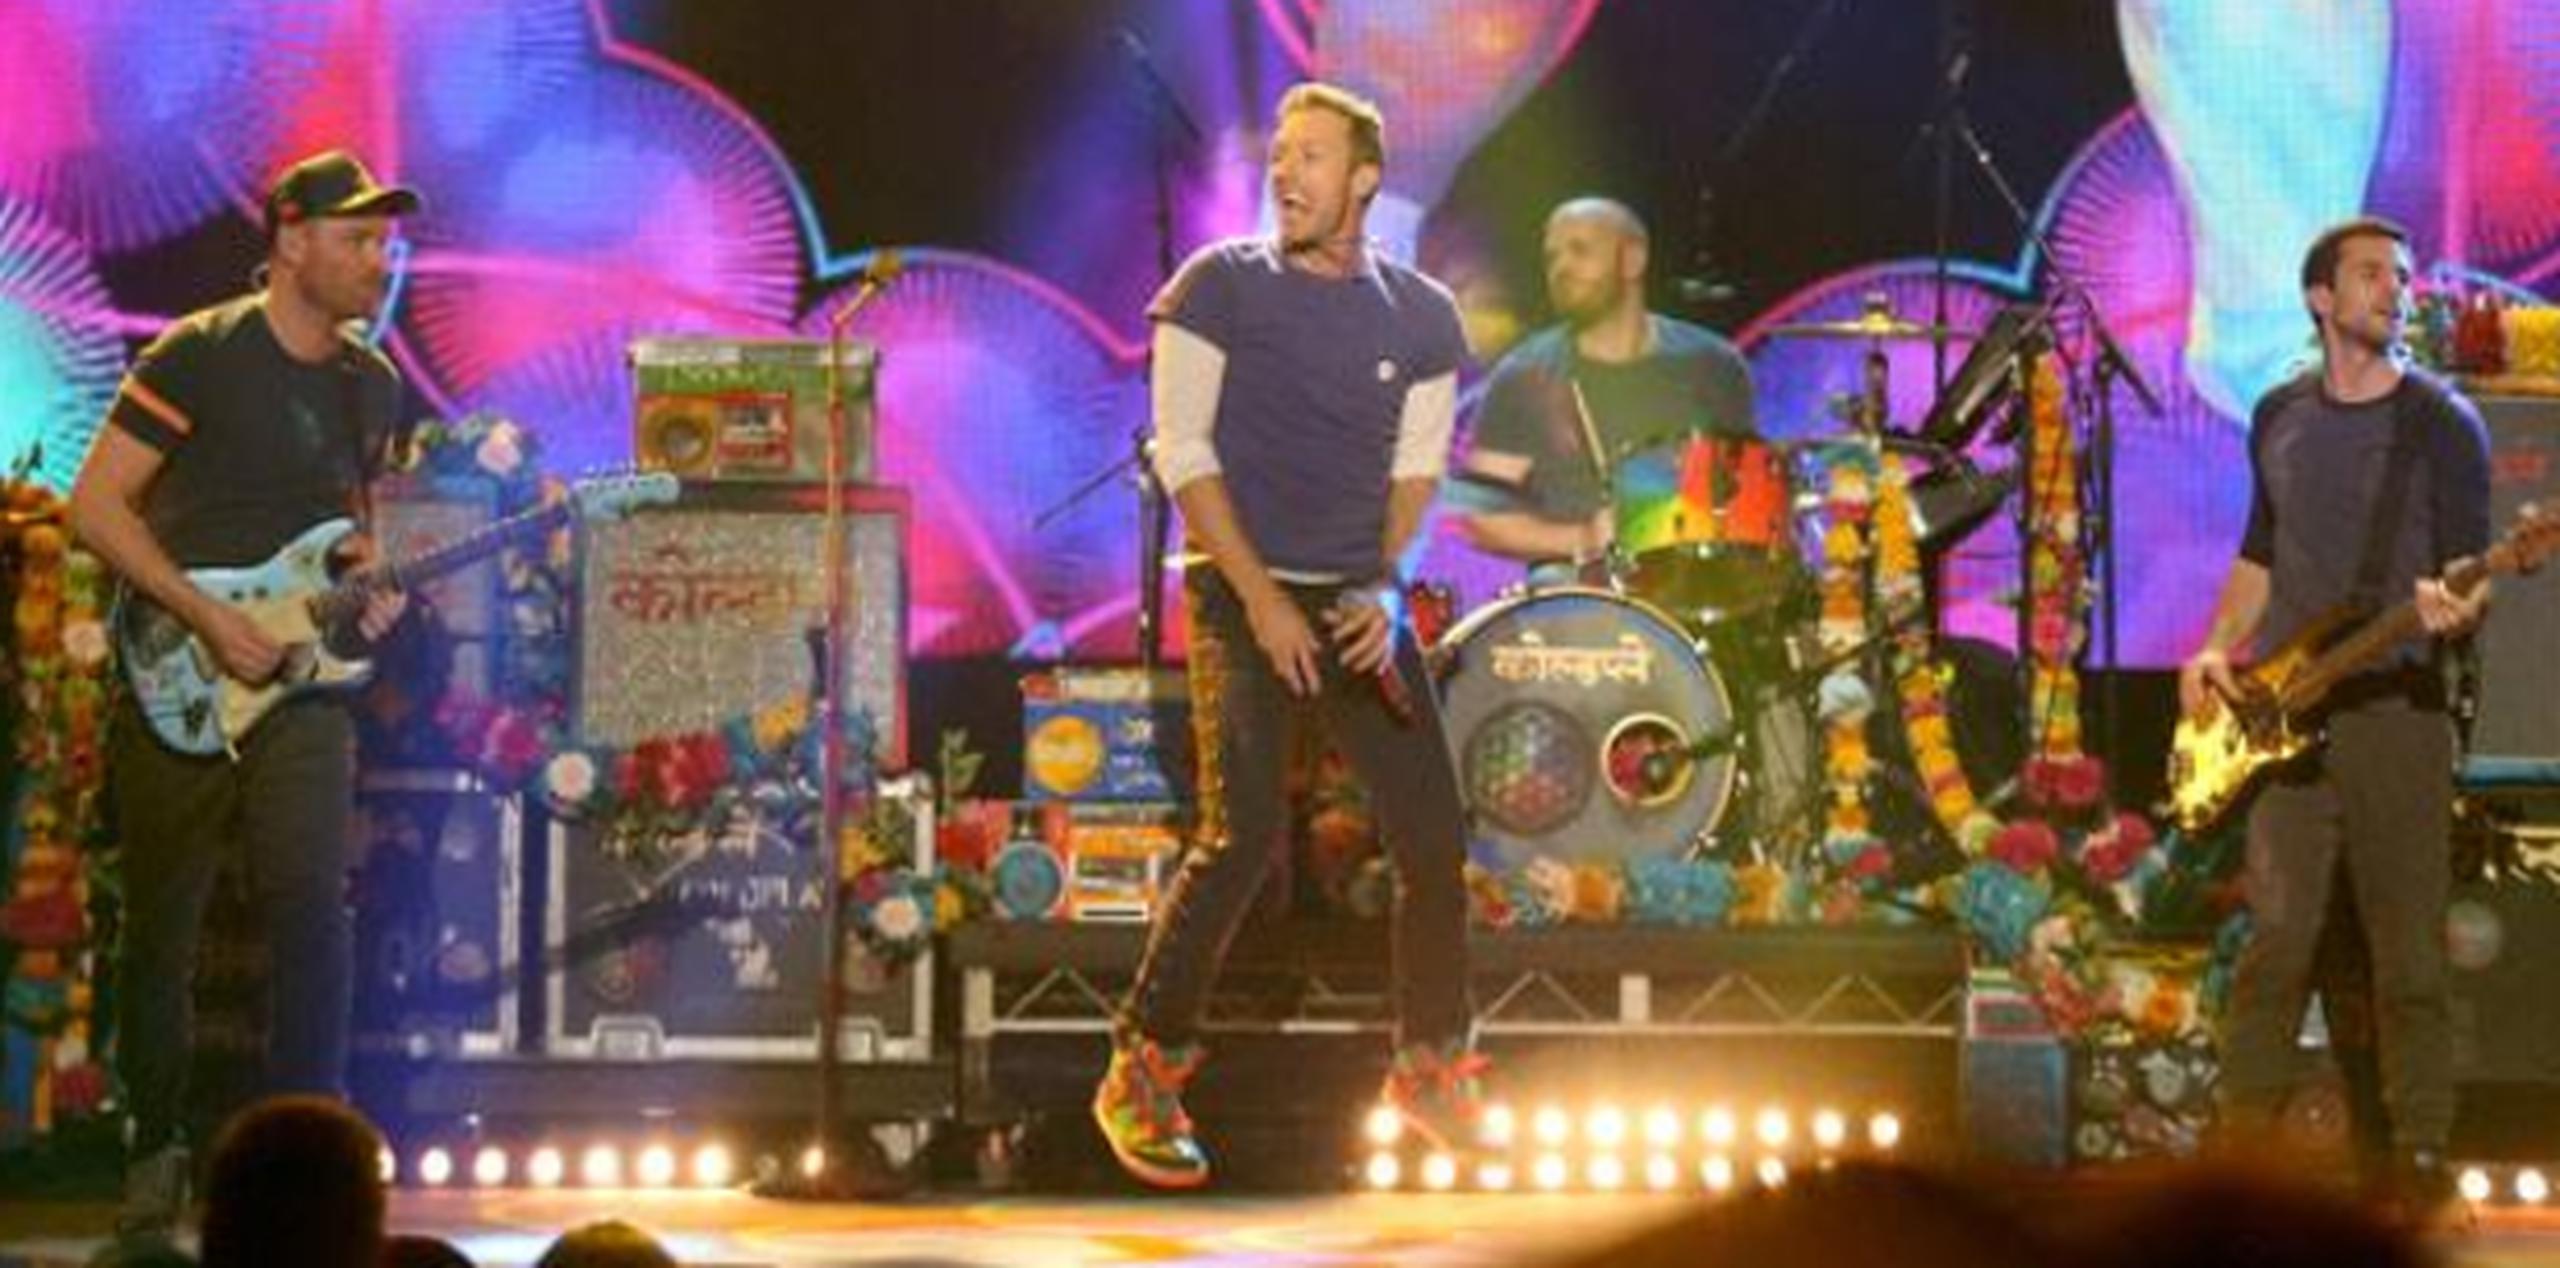 La banda Coldplay contactó en redes al padre y al niño, tras el emotivo vídeo posteado en redes. (Archivo)